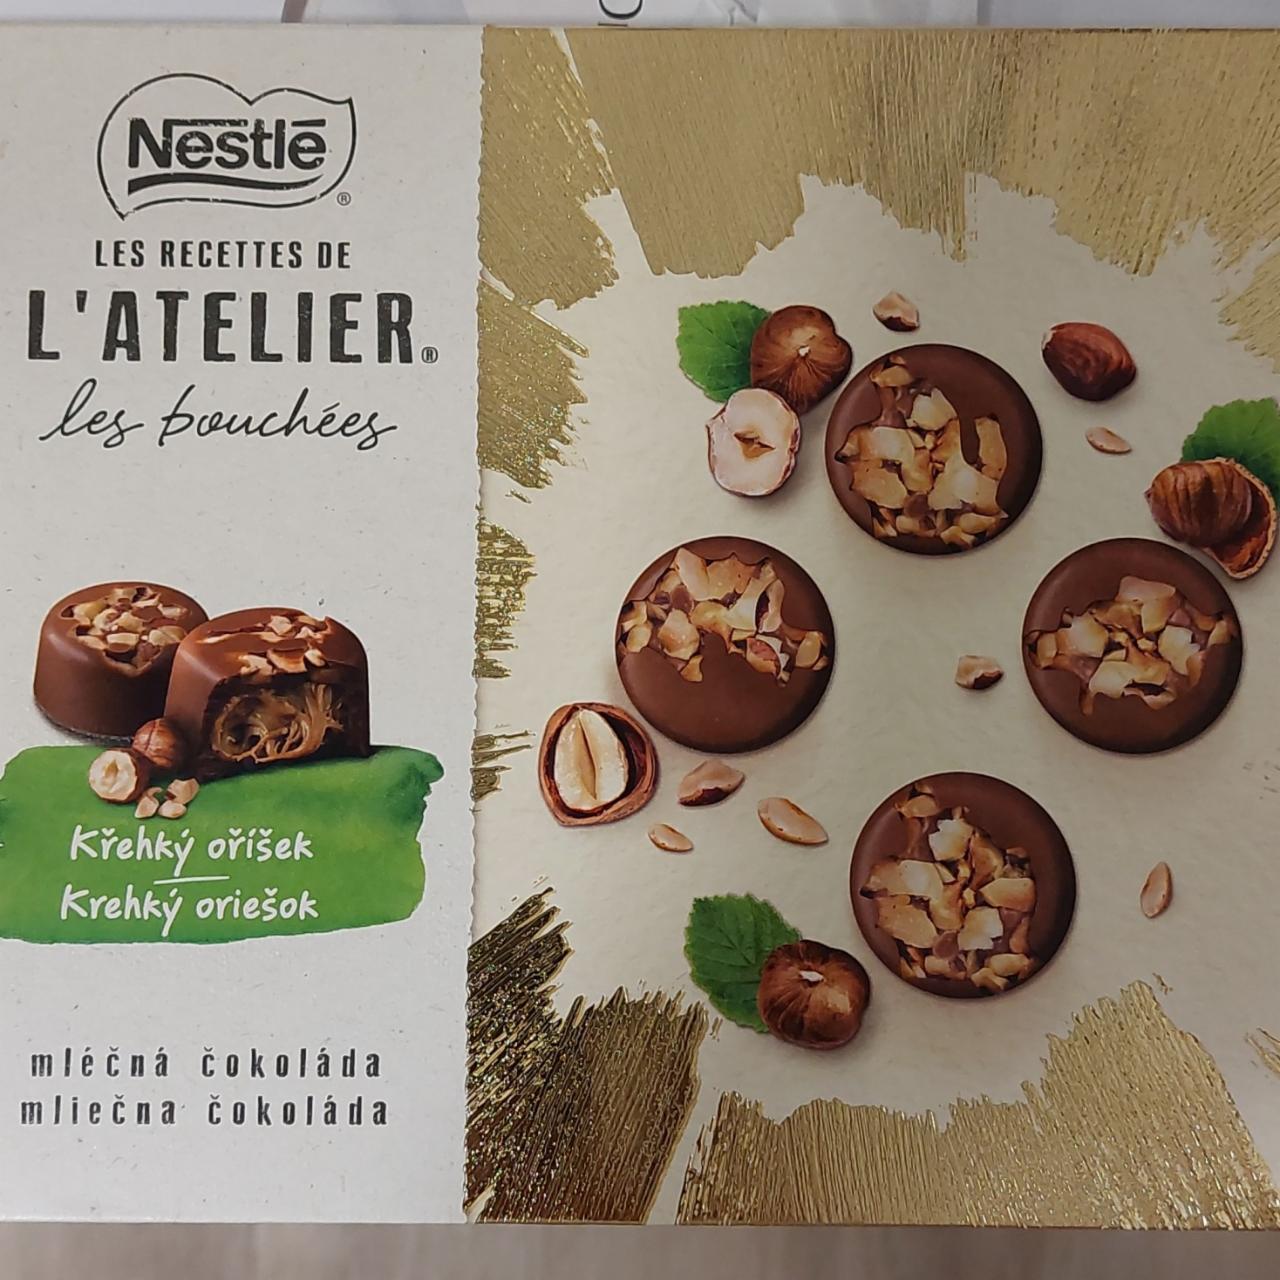 Fotografie - Les Recettes de L'Atelier Křehký oříšek mléčná čokoláda Nestlé